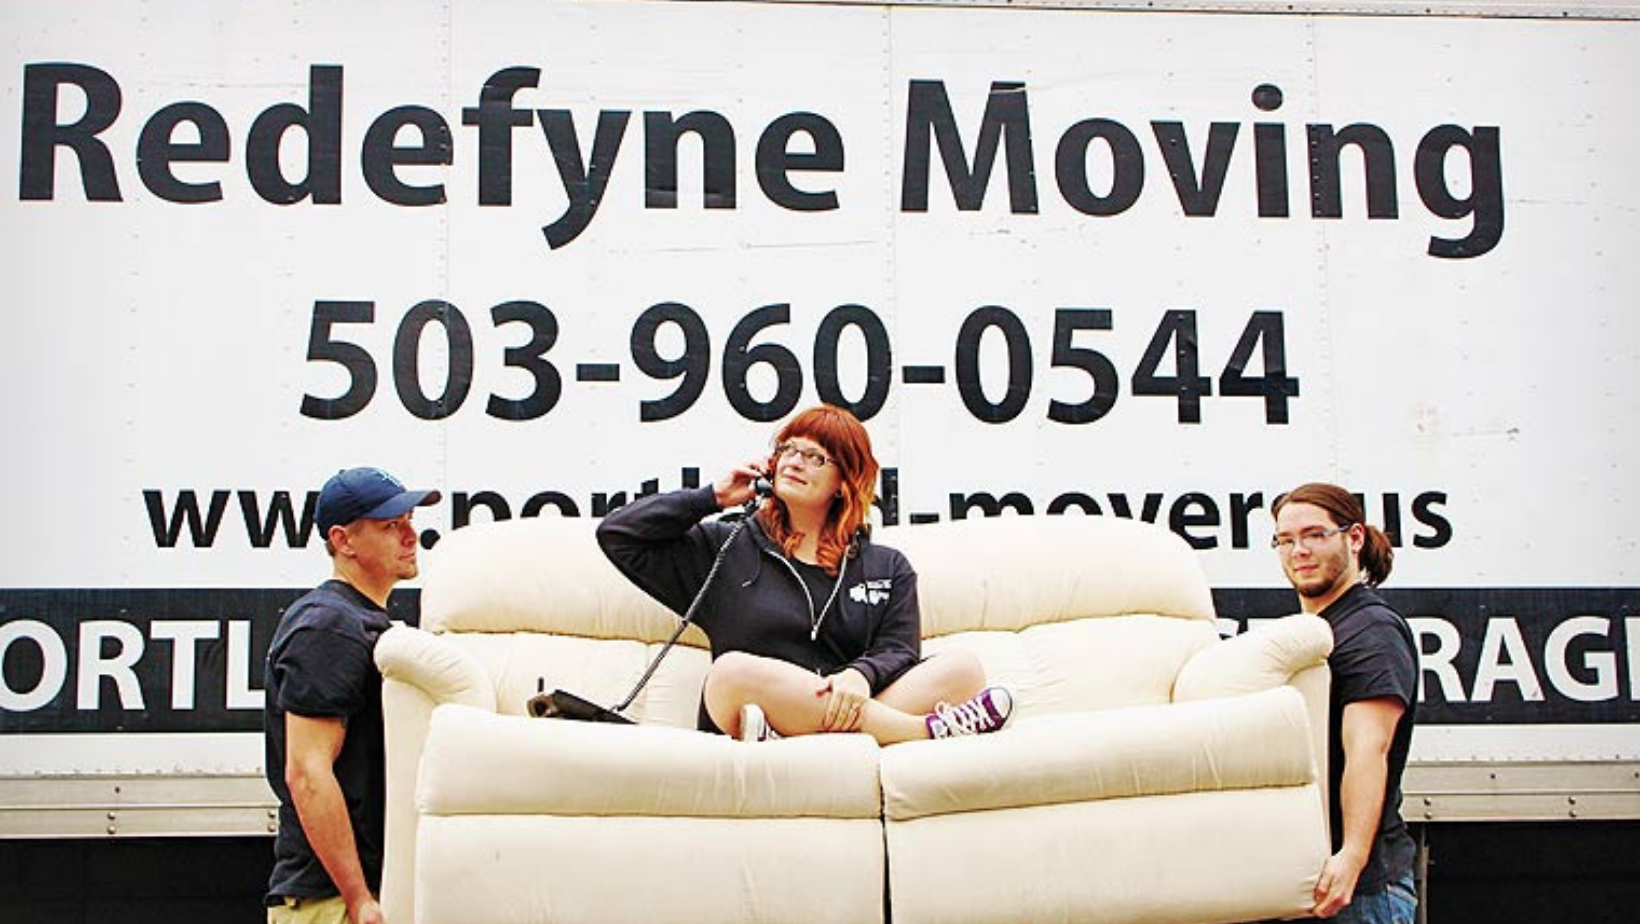 Lake Oswego Moving Company - Redefyne Moving & Storage